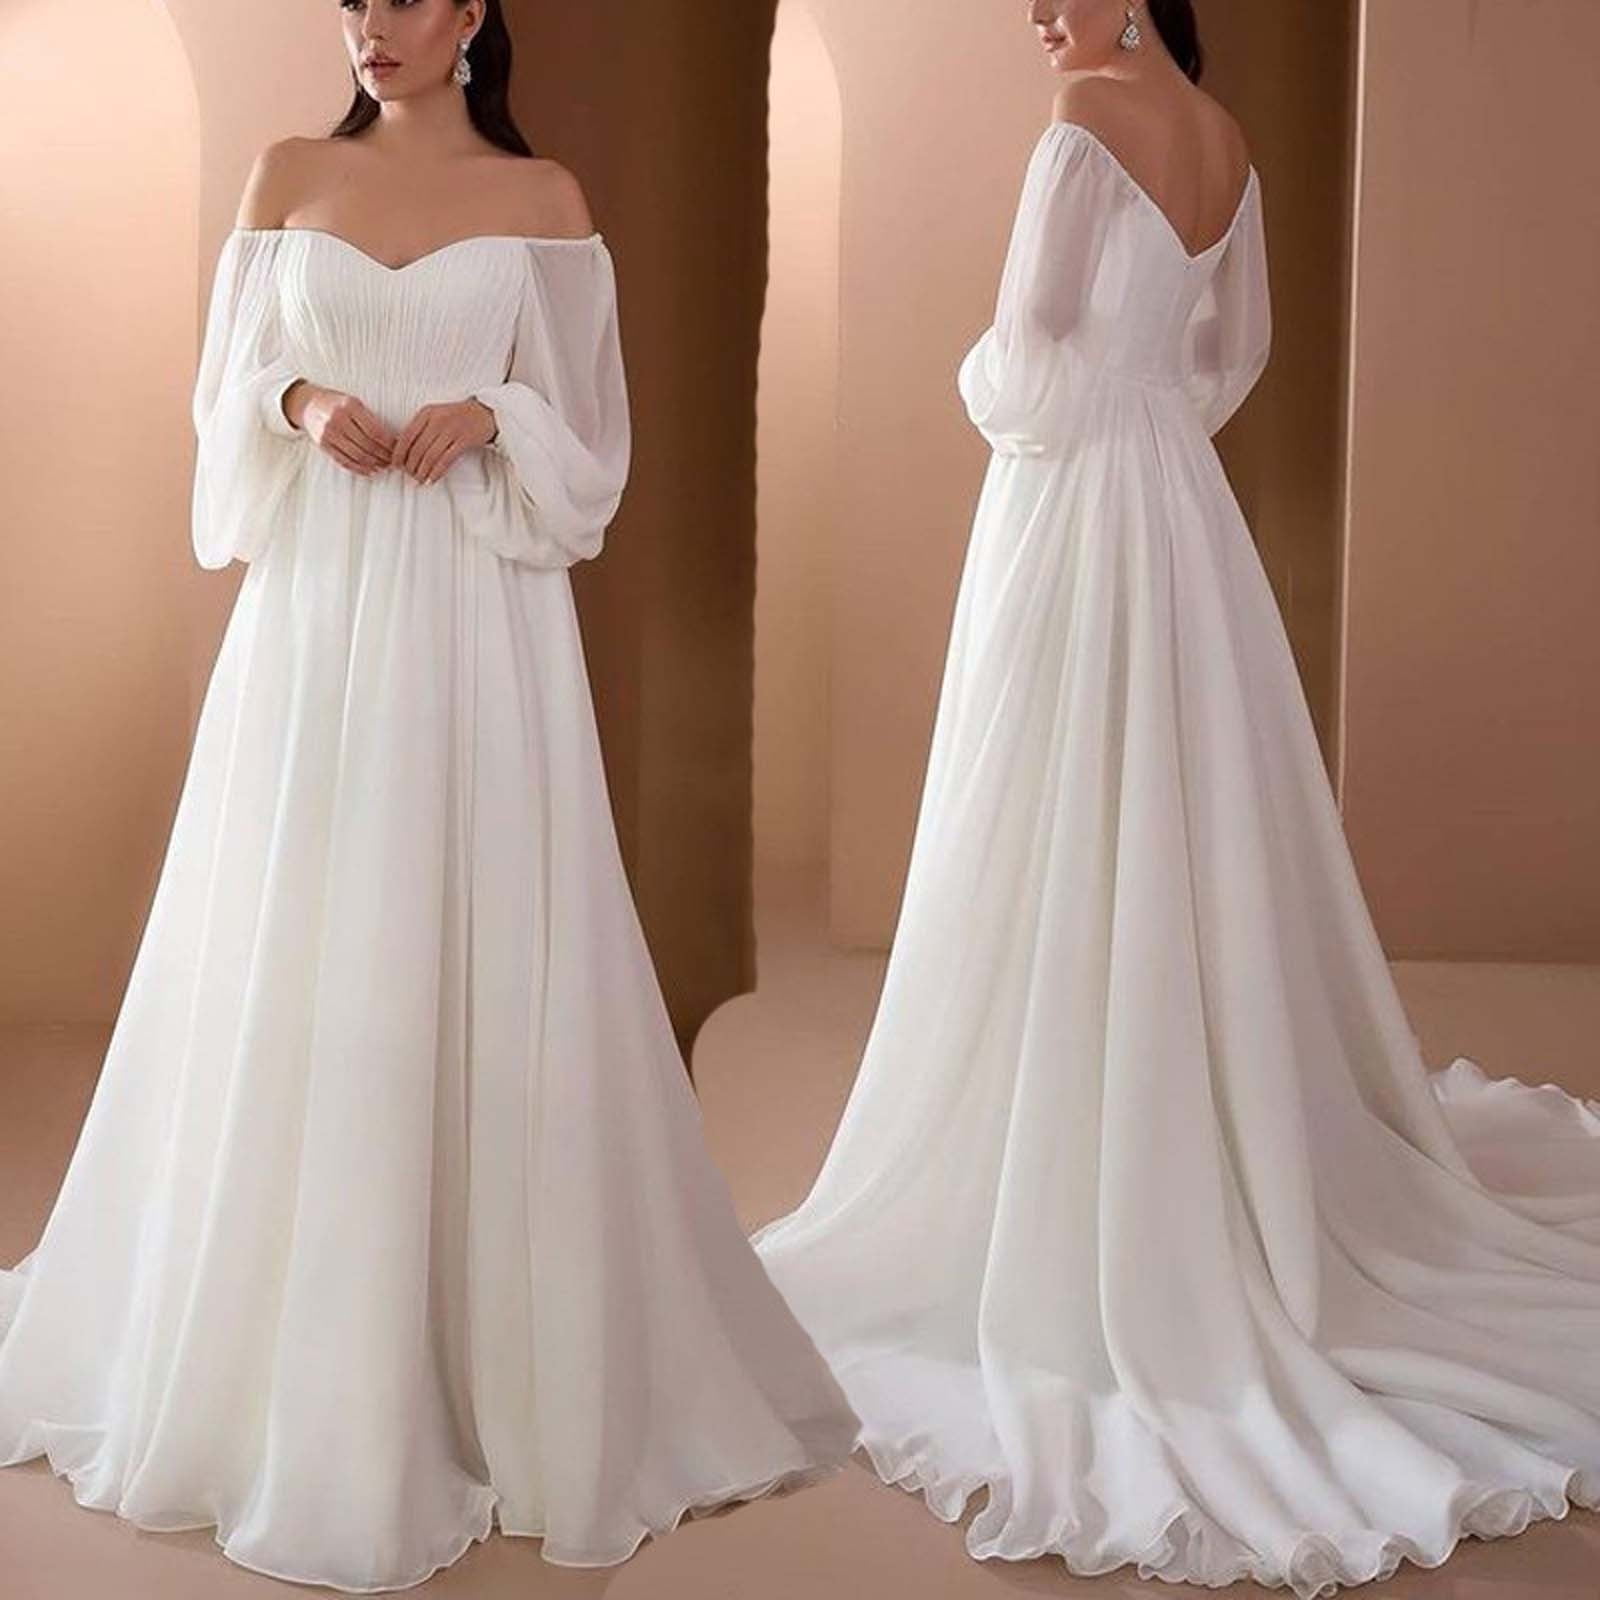 long white formal dresses